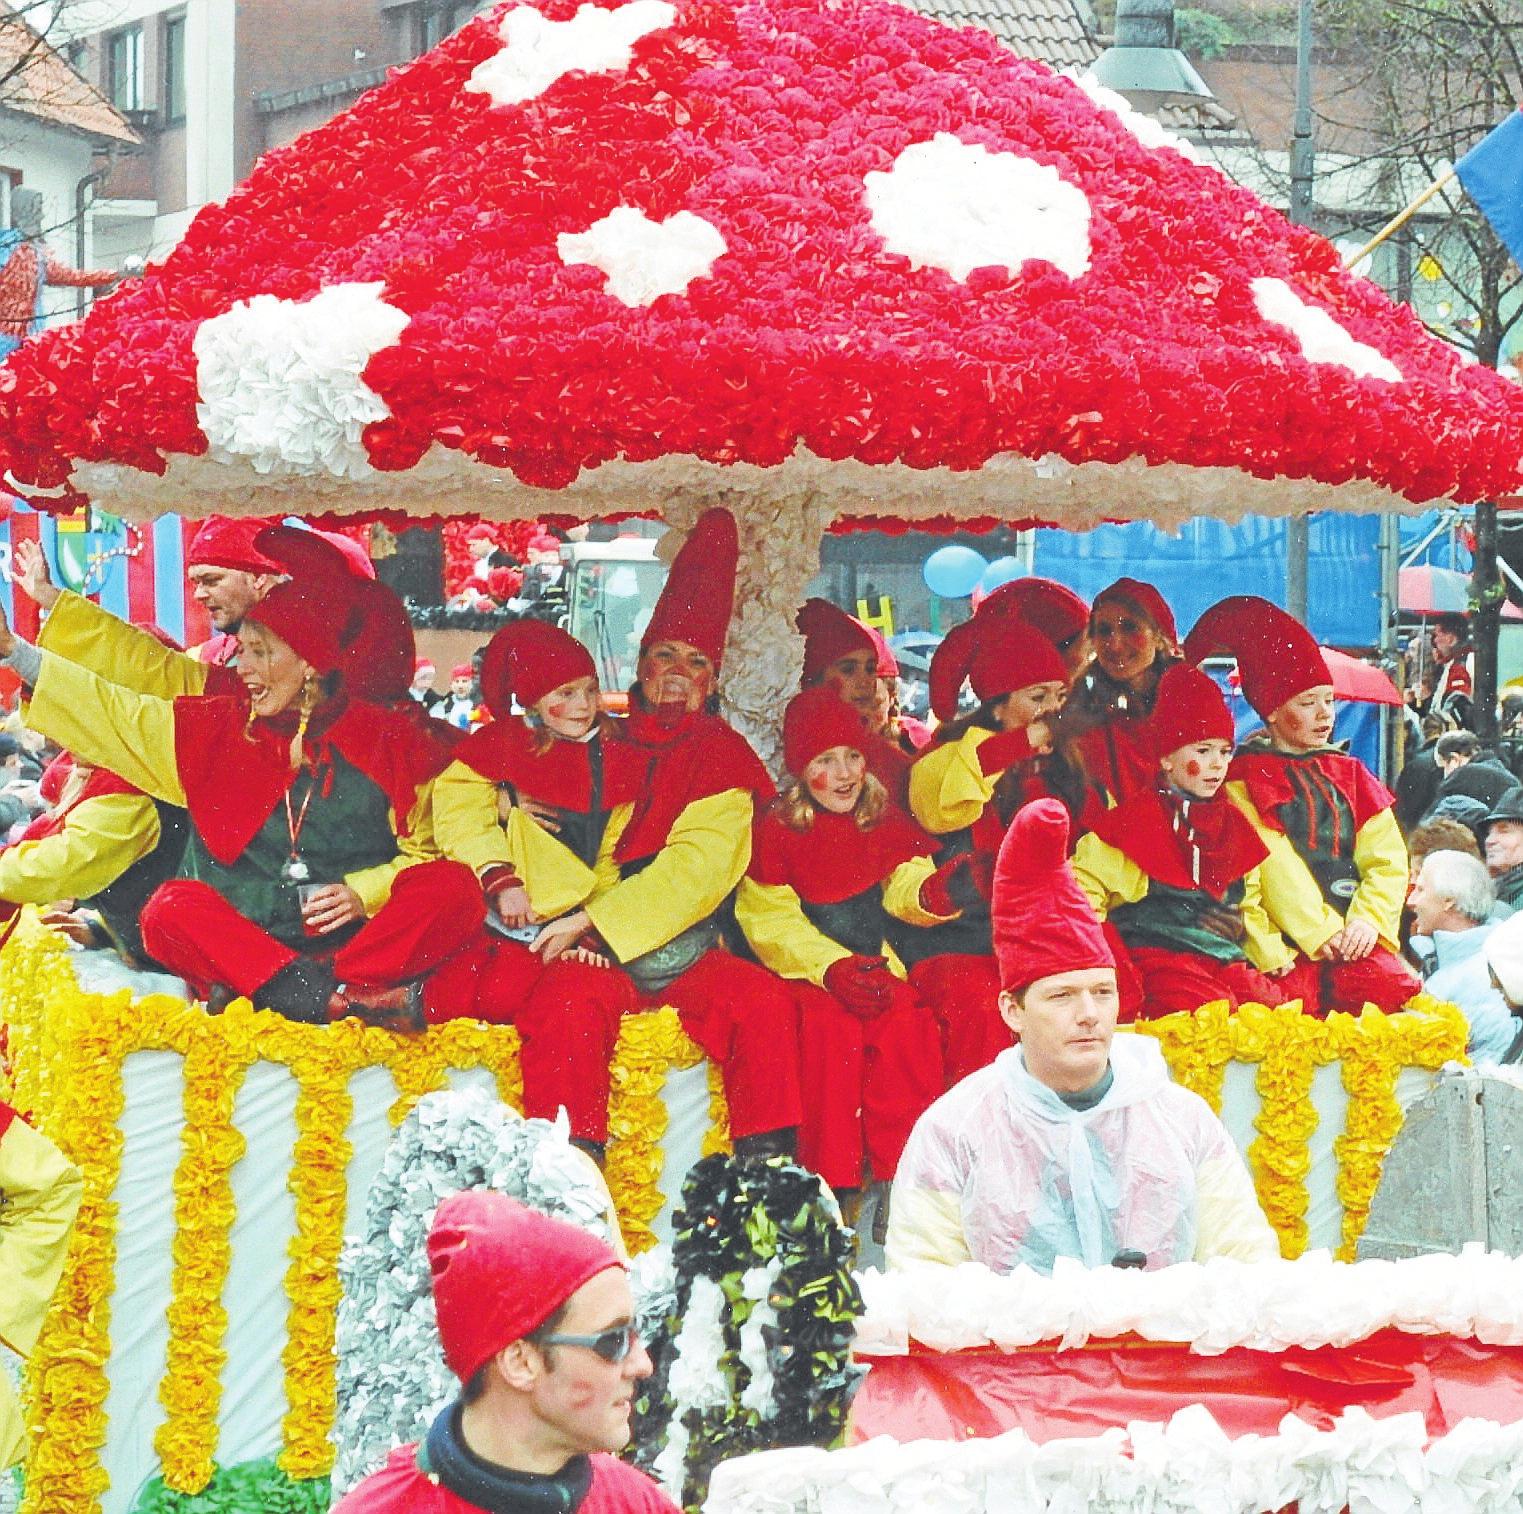 Der Dammer Carneval ist auch alljährlich ein Familienfest, bei dem alle unter einem Hut mitmachen. Hier ein Foto aus dem Jahr 2005.